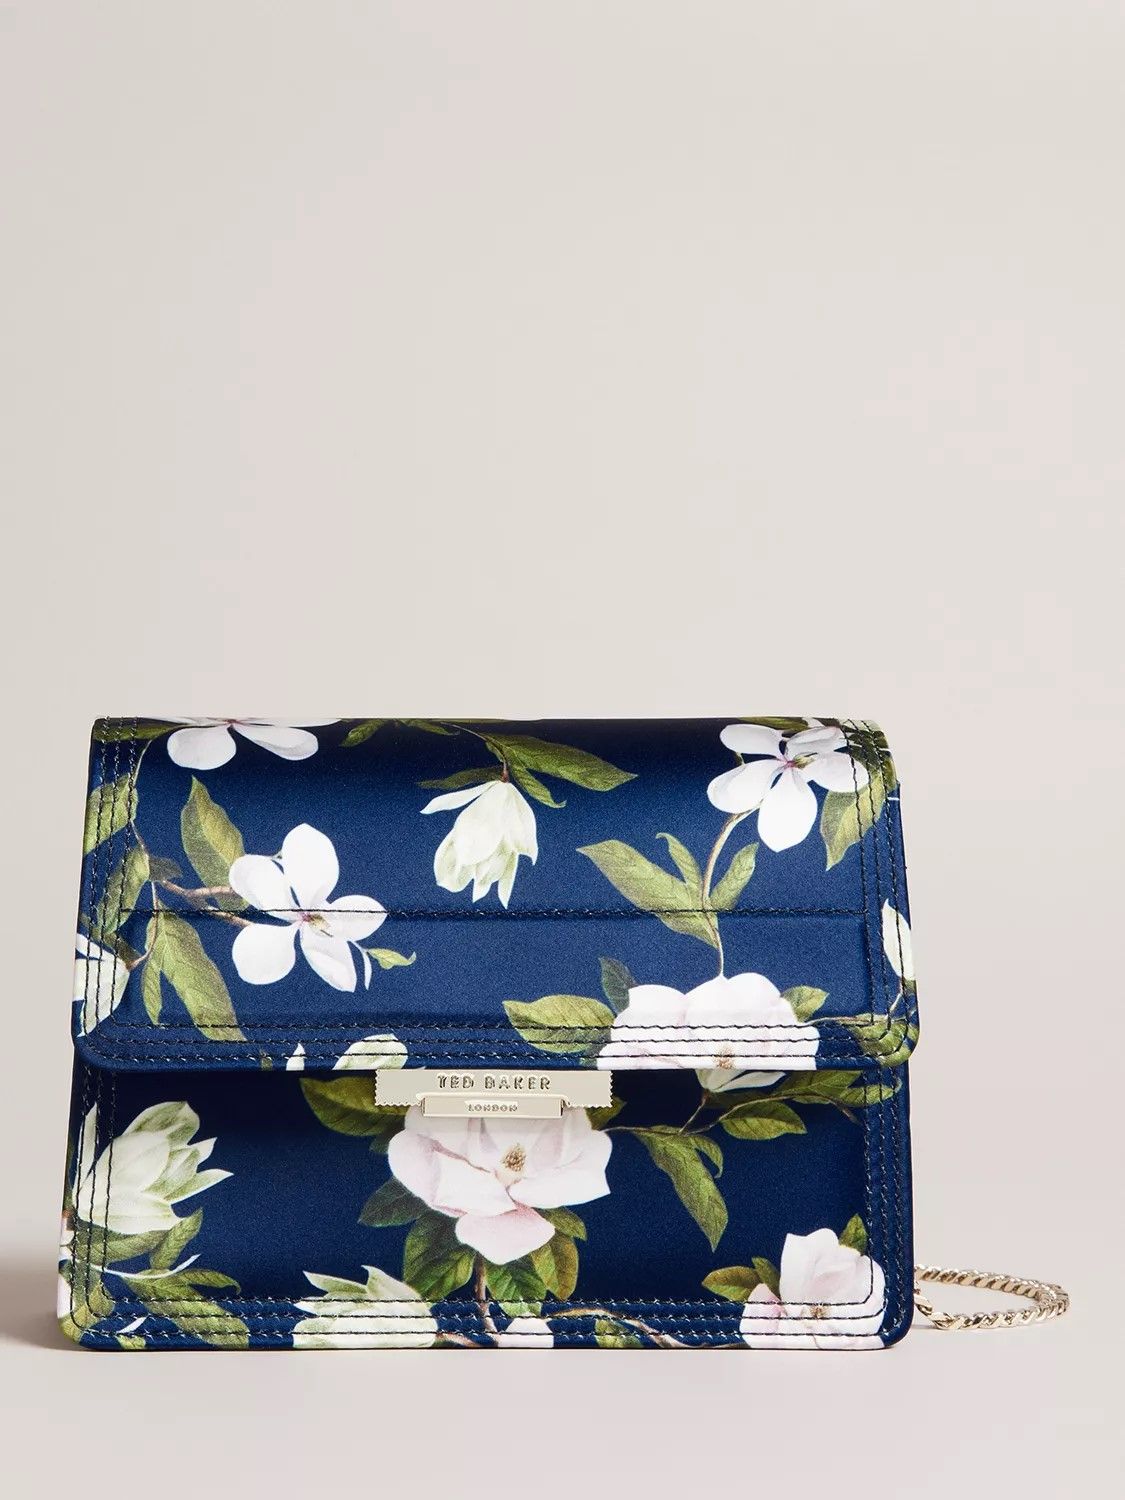 Ted Baker Jenil Floral Chain Strap Shoulder Bag, Pastel Green